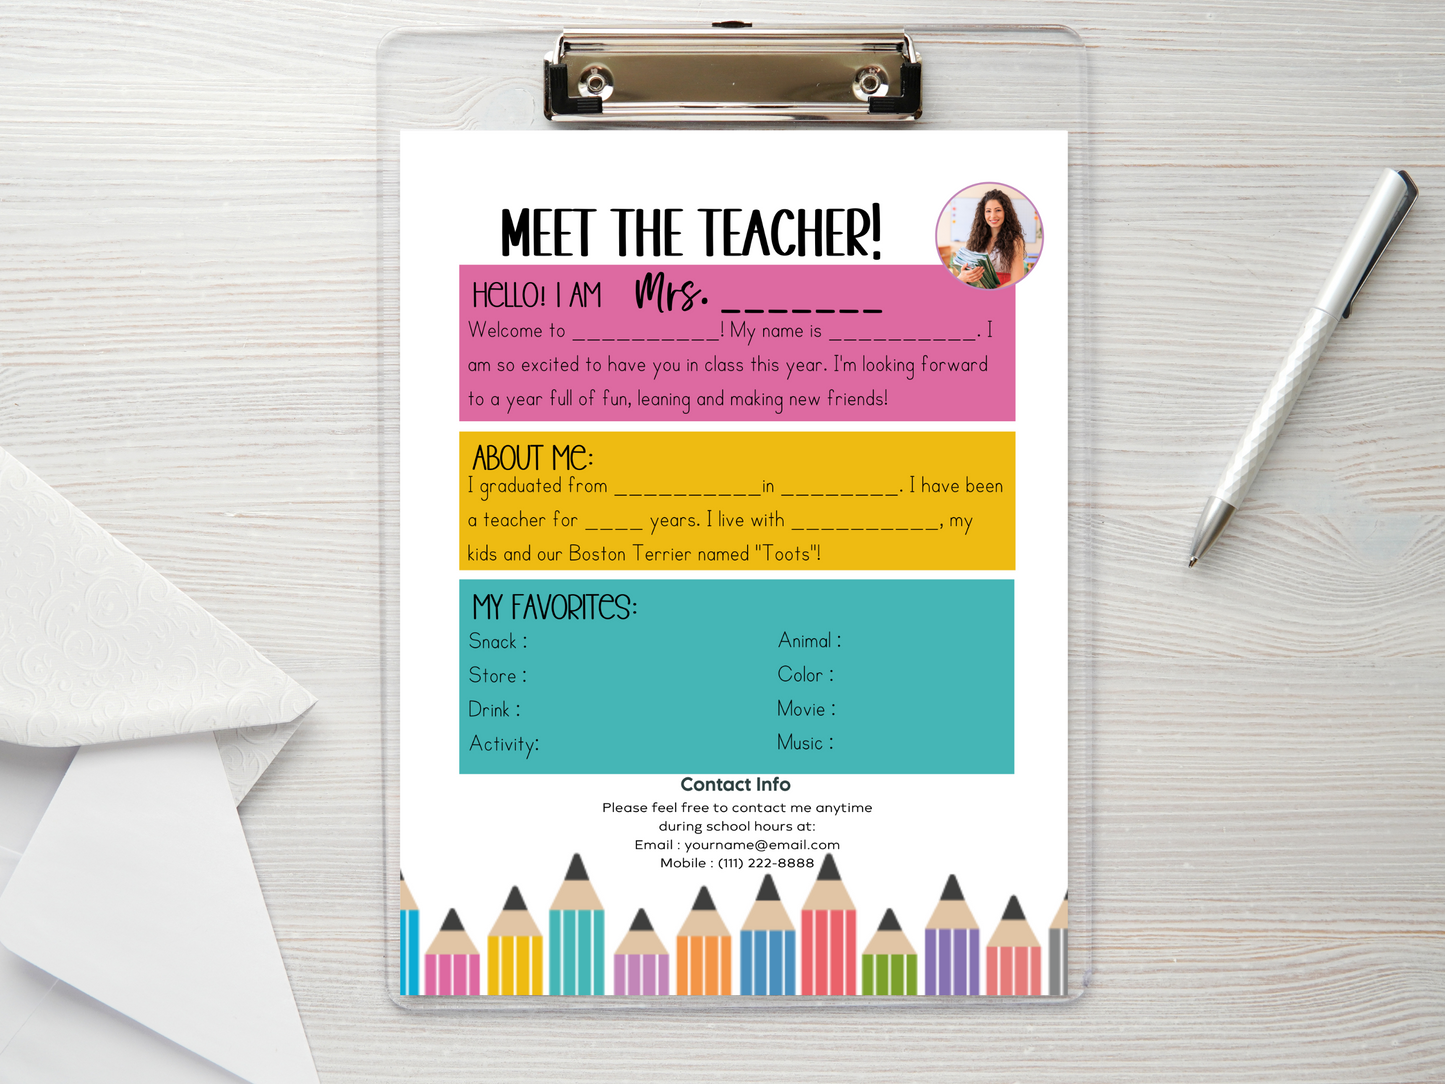 Meet the Teacher Letter Template - Pencils